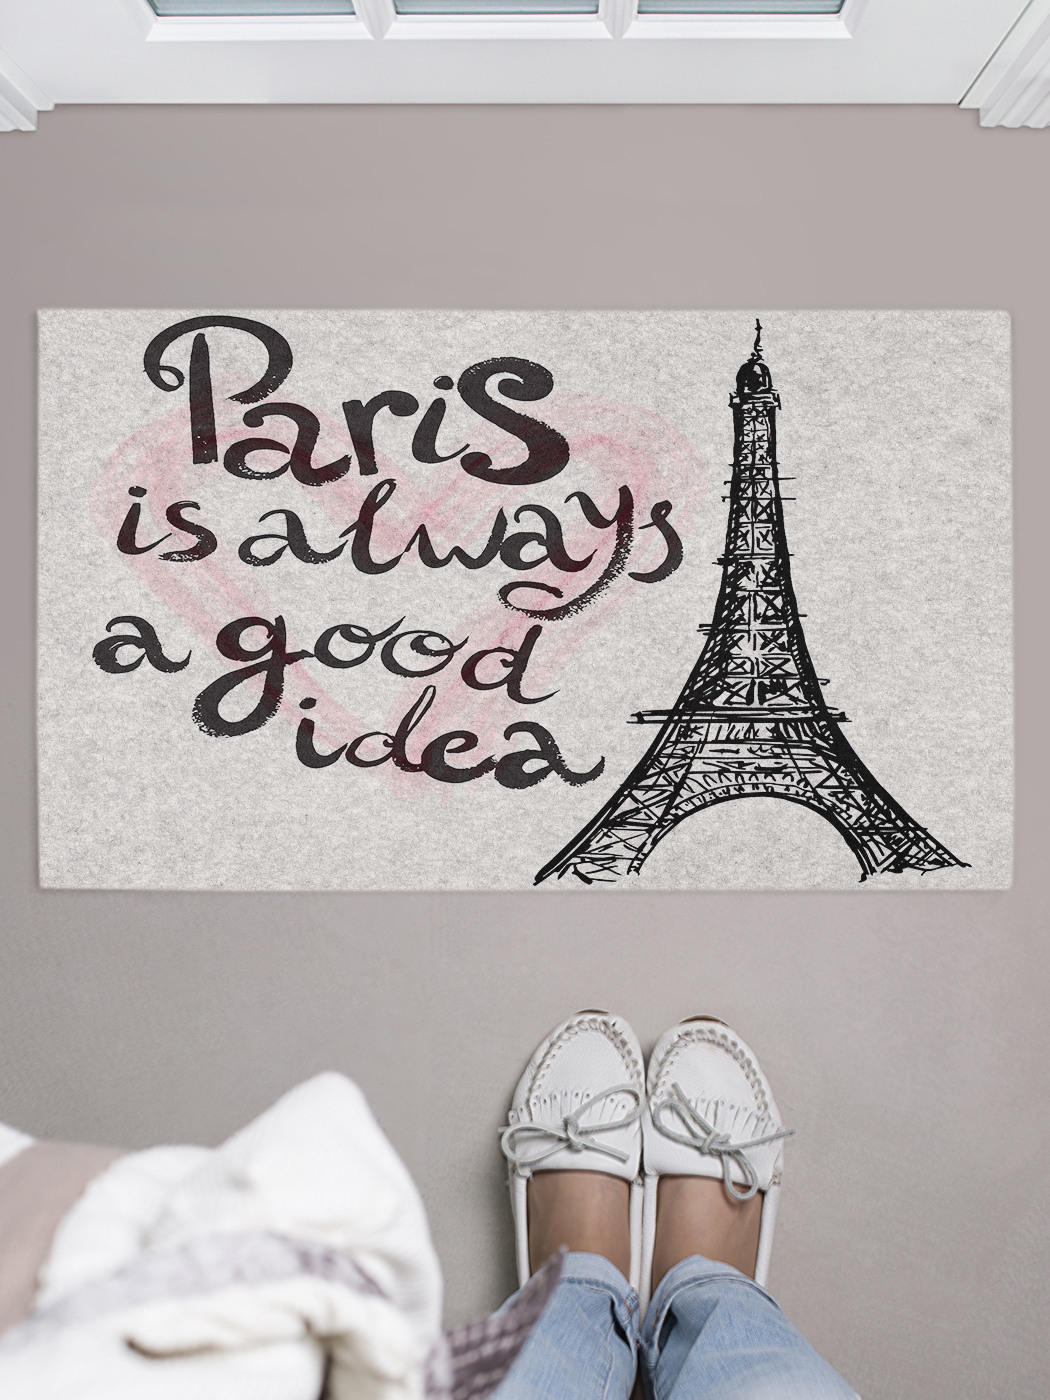 Париж всегда хорошая. Париж - всегда хорошая идея. Николя Барро Париж всегда хорошая идея. Париж всегда хорошая идея отзывы.